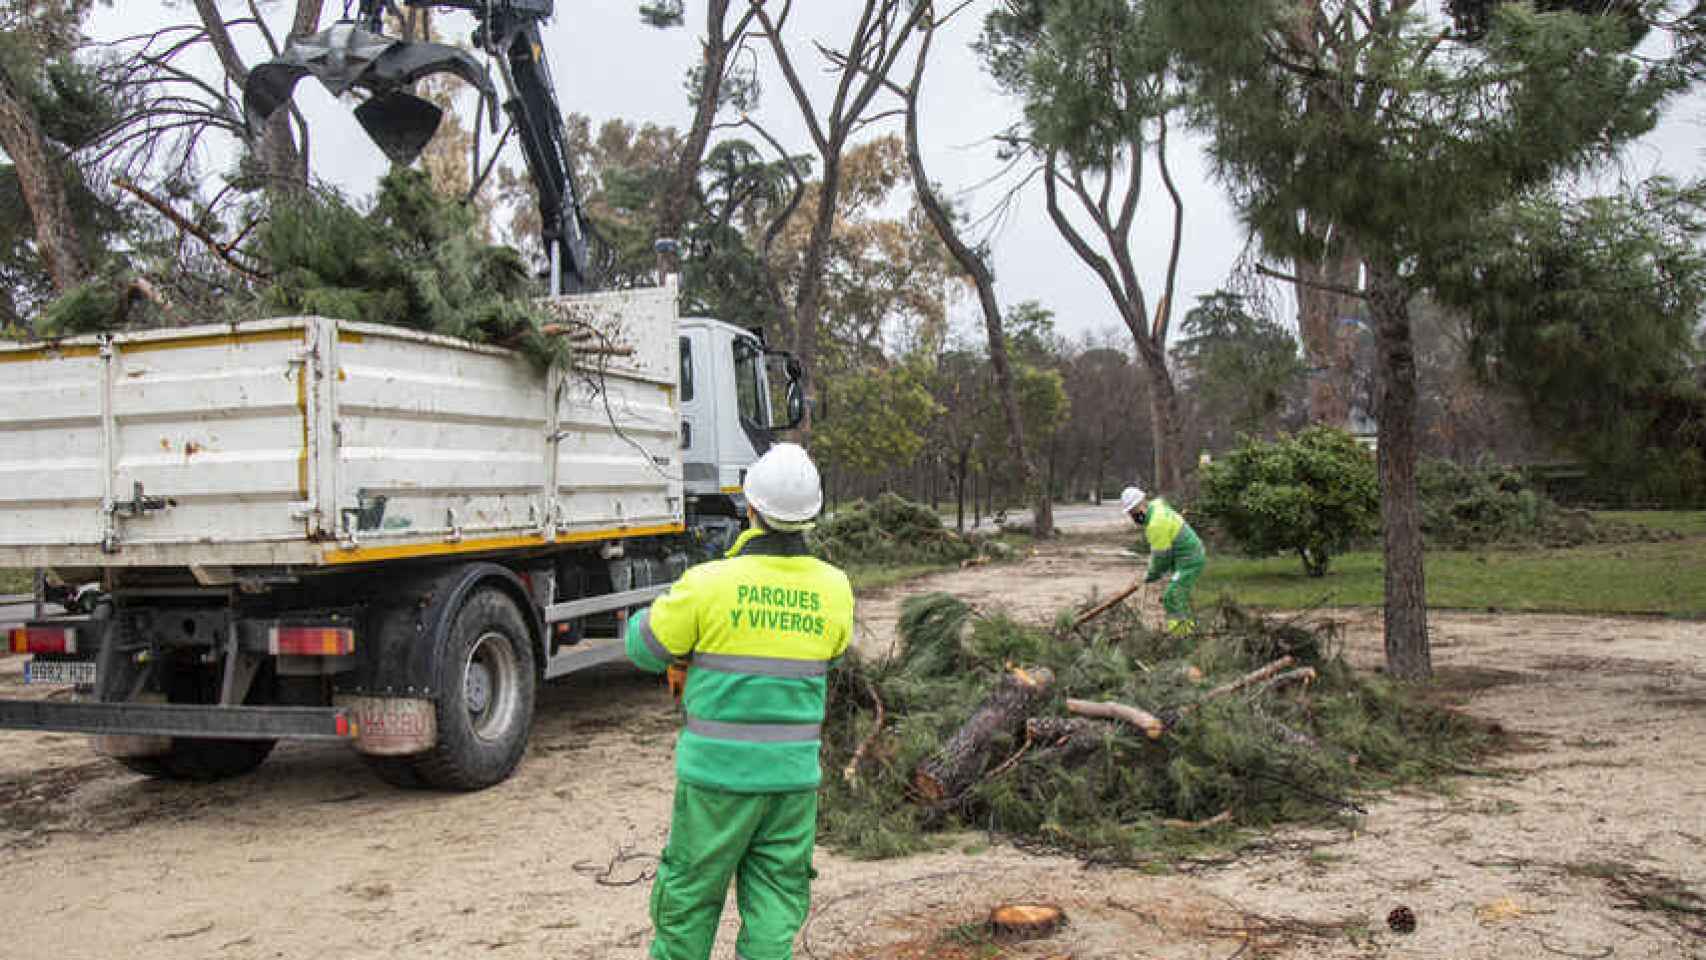 Los operarios trocean con la motosierra los árboles dañados y los transportan en vehículos. Jorge Barreno